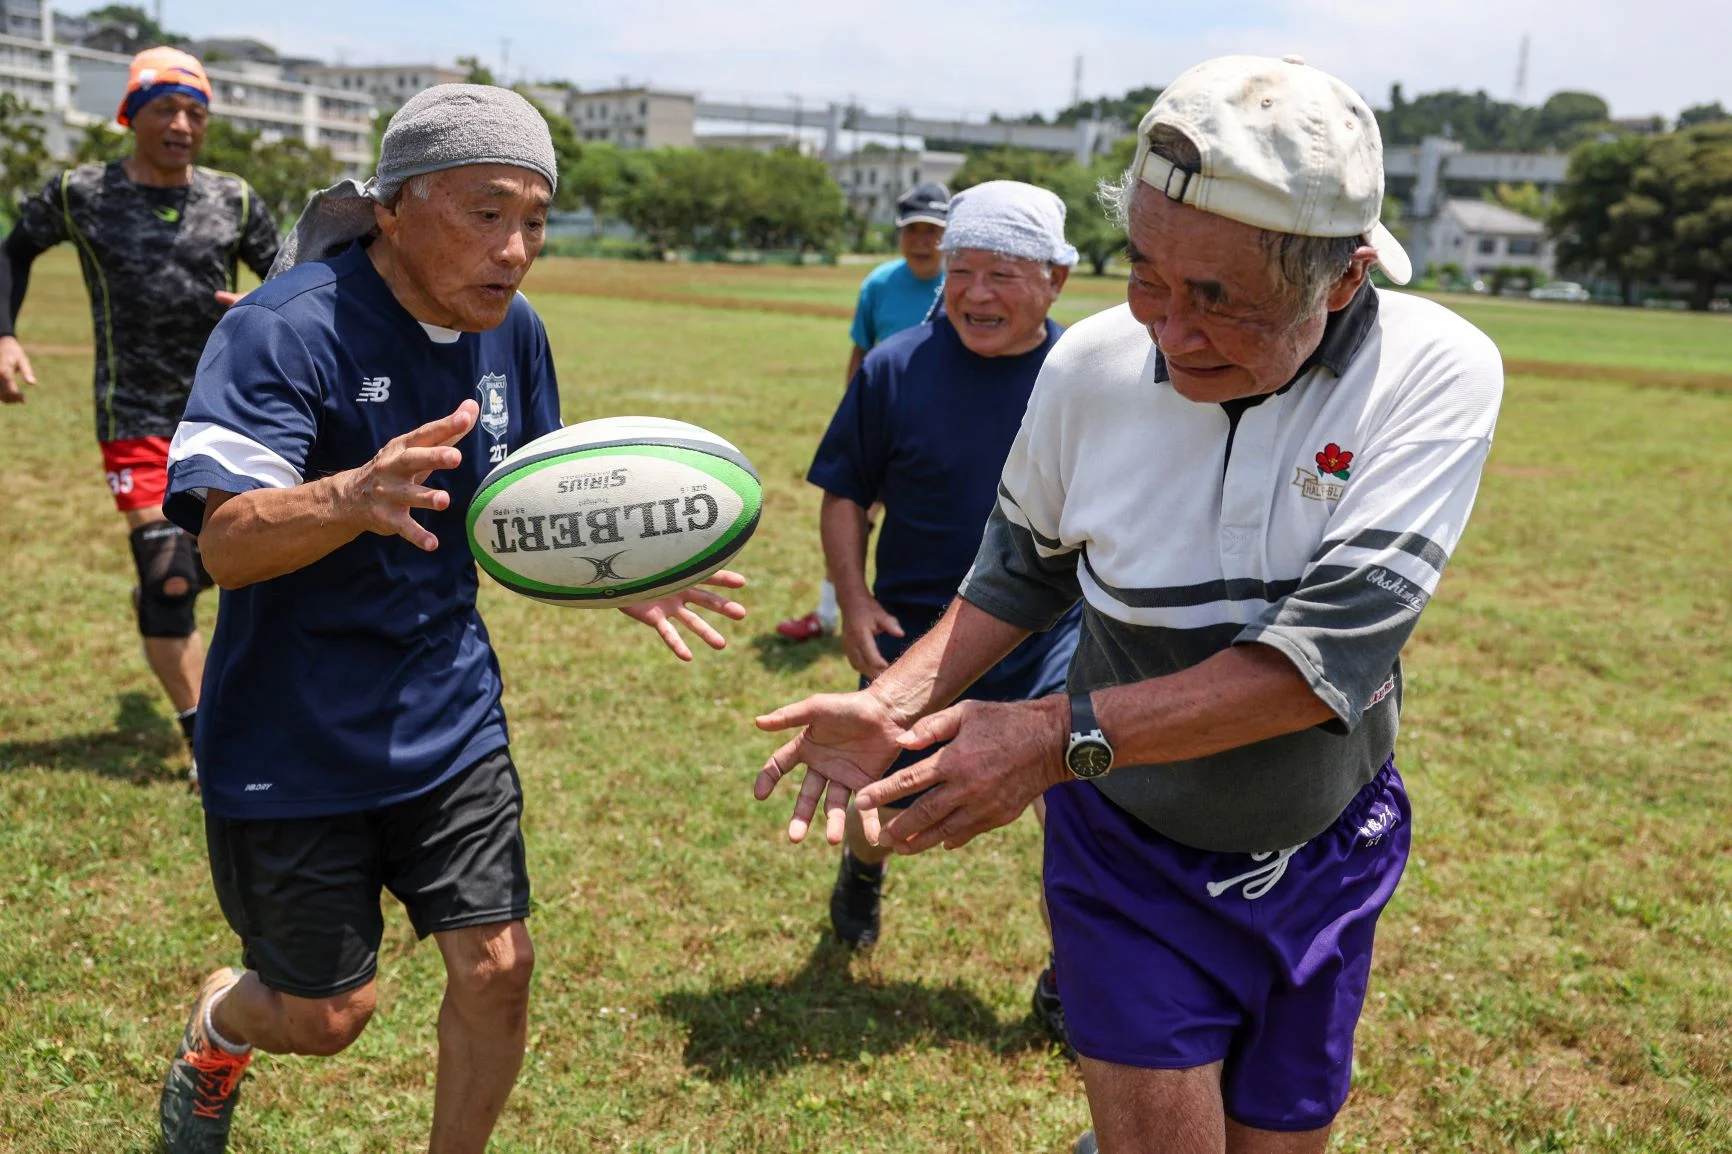 現年八十五歲的日本欖球運動員Yasutake Oshima（右）正和隊友於鎌倉市（Kamakura）一個運動場進行訓練，他們所屬隊伍內所有球員均已年過七十。當地目前約有一百五十個俱樂部，專為四十歲以上的欖球運動員舉辦比賽。照片攝於六月。（KAREN HAIBARA / AFP）